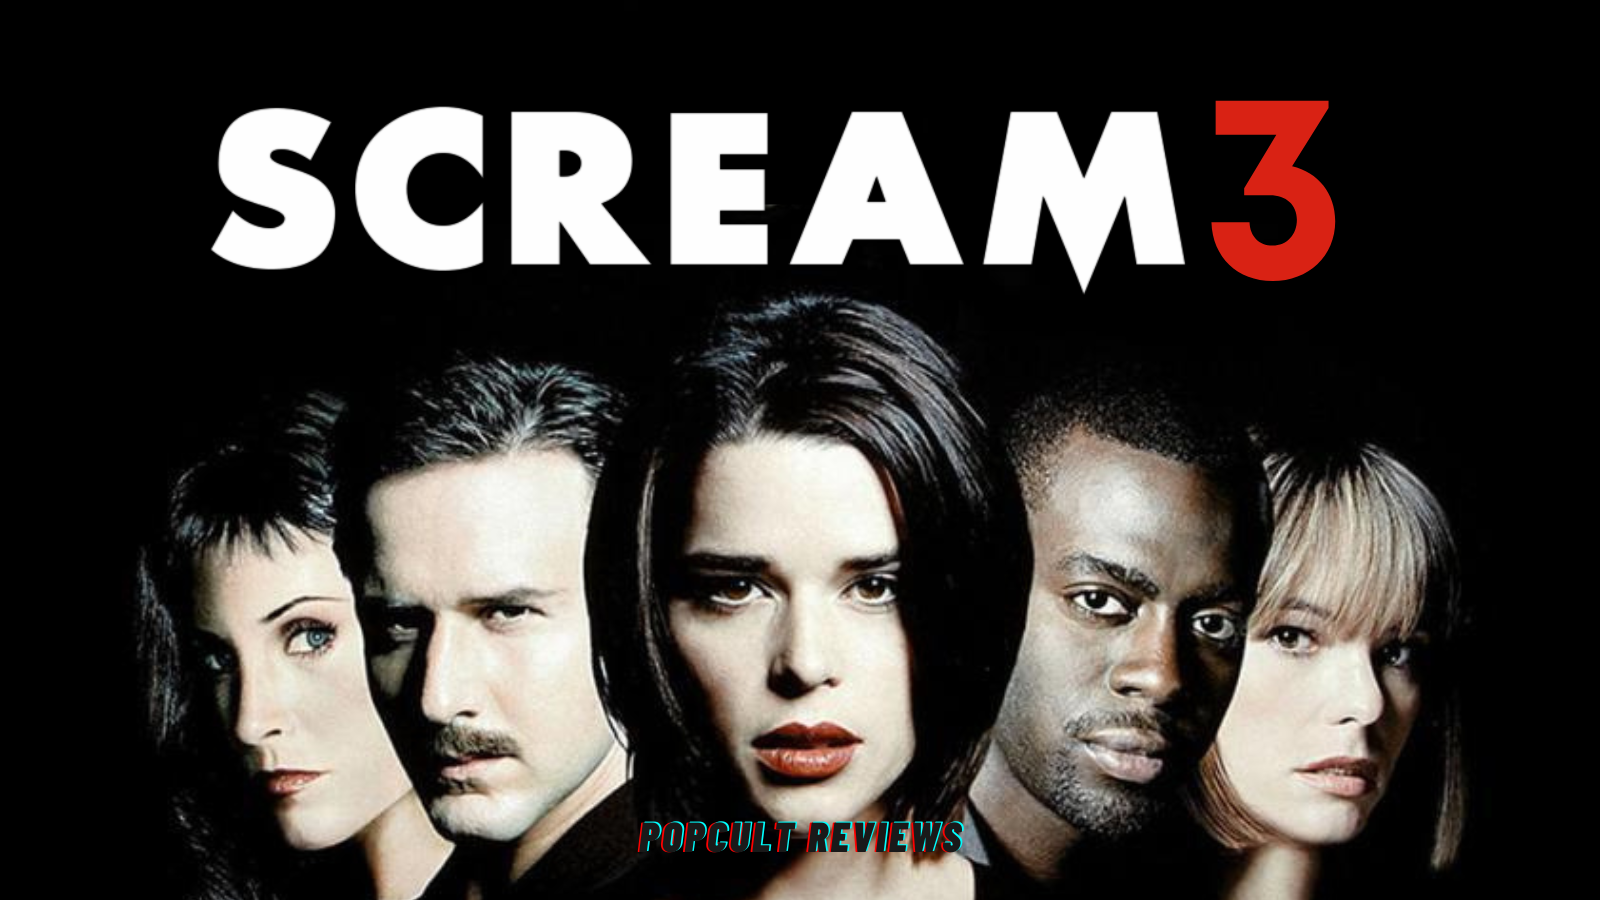 scream 3 movie review